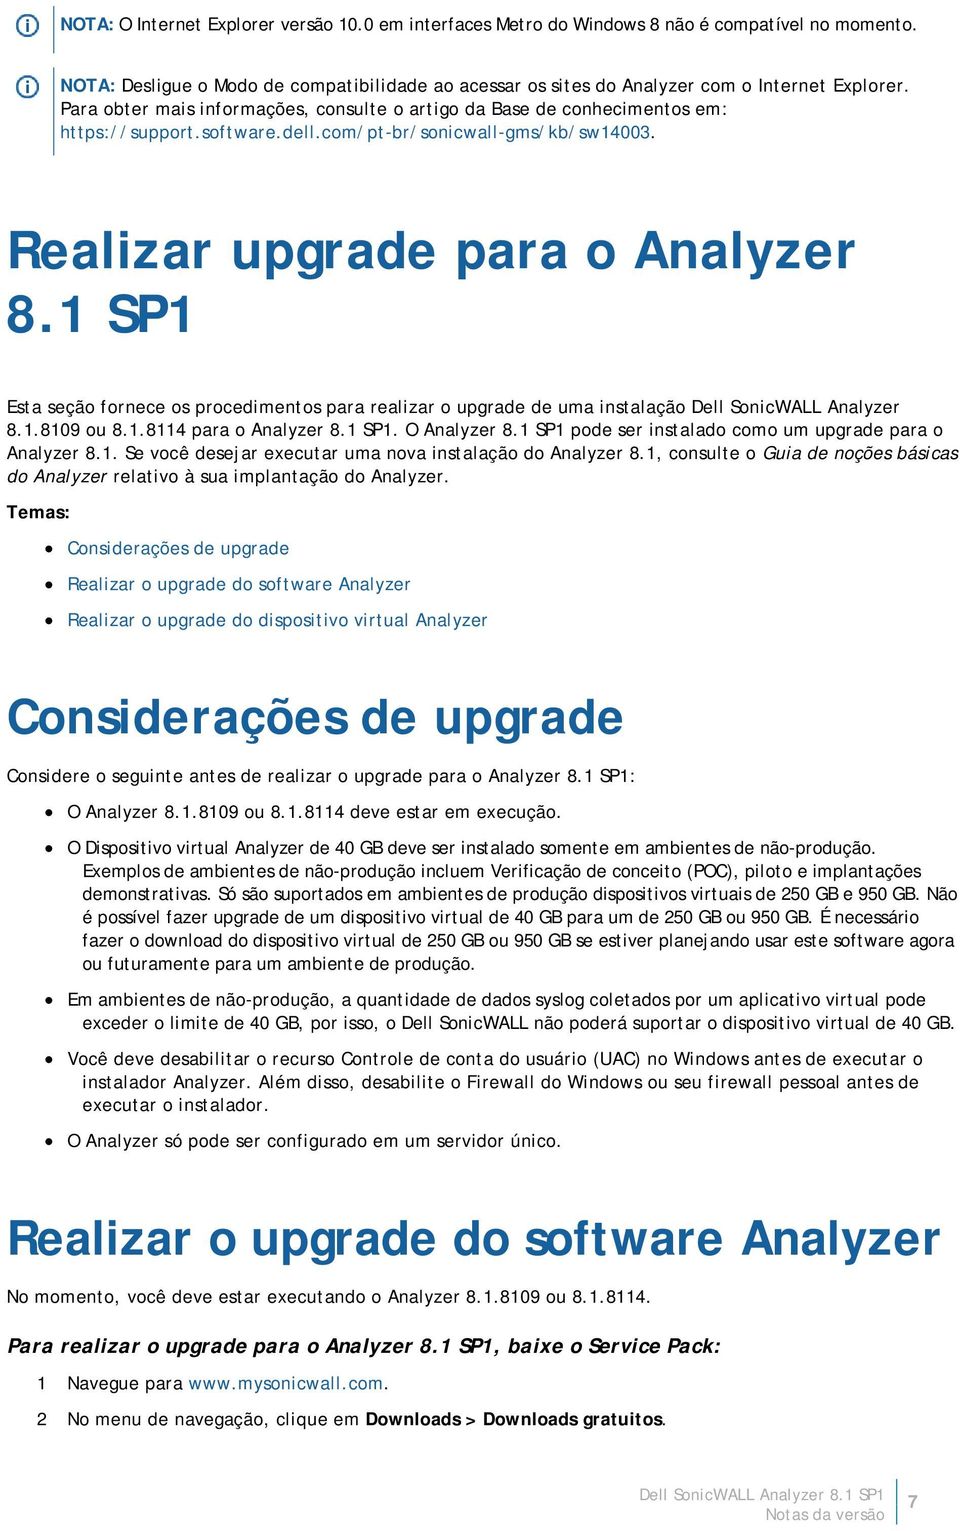 1 SP1 Esta seção fornece os procedimentos para realizar o upgrade de uma instalação Dell SonicWALL Analyzer 8.1.8109 ou 8.1.8114 para o Analyzer 8.1 SP1. O Analyzer 8.